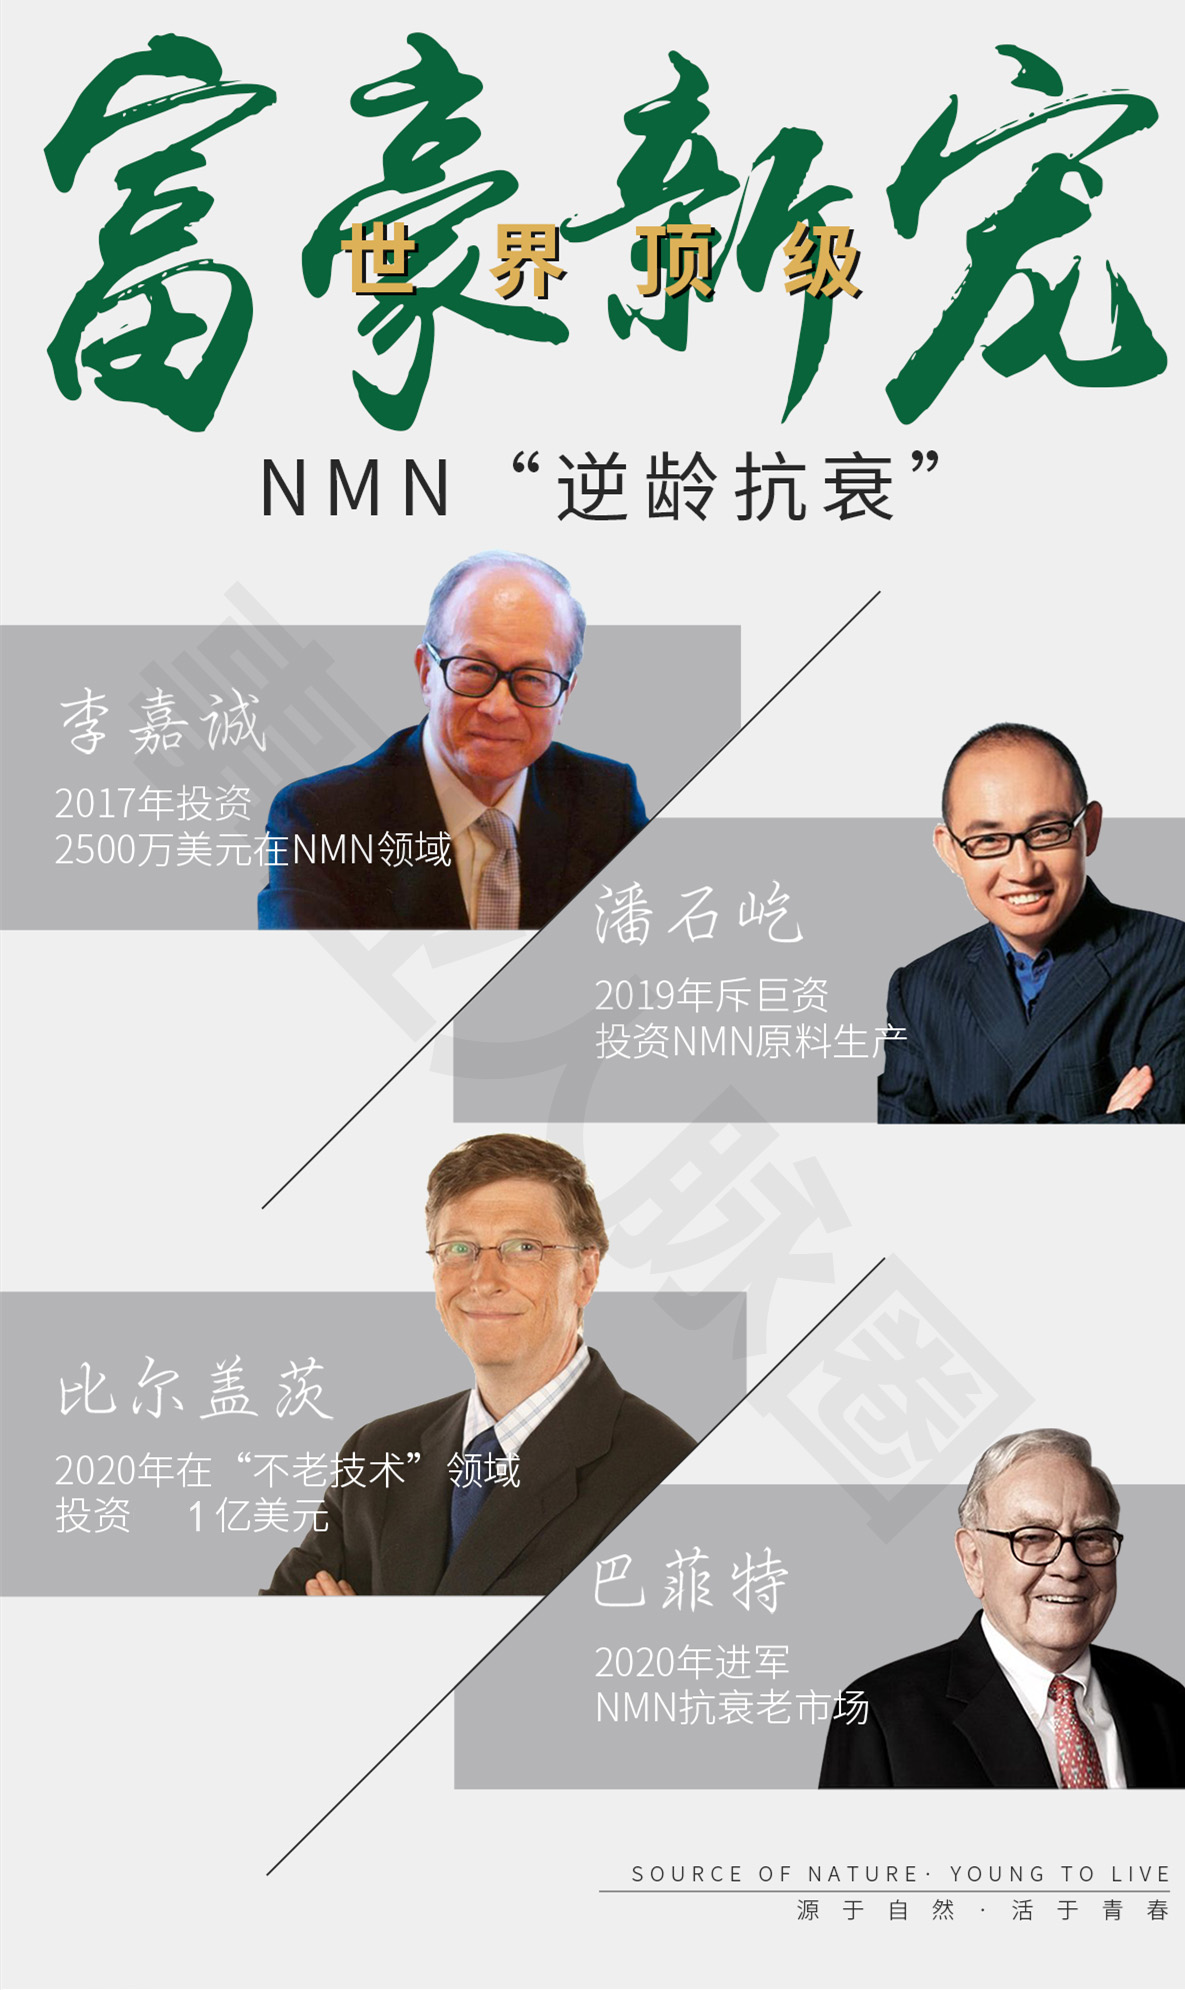 【媒体报导】台湾TVBS电视报导:NMN掀起全球保健领域热议, 富豪名人关注